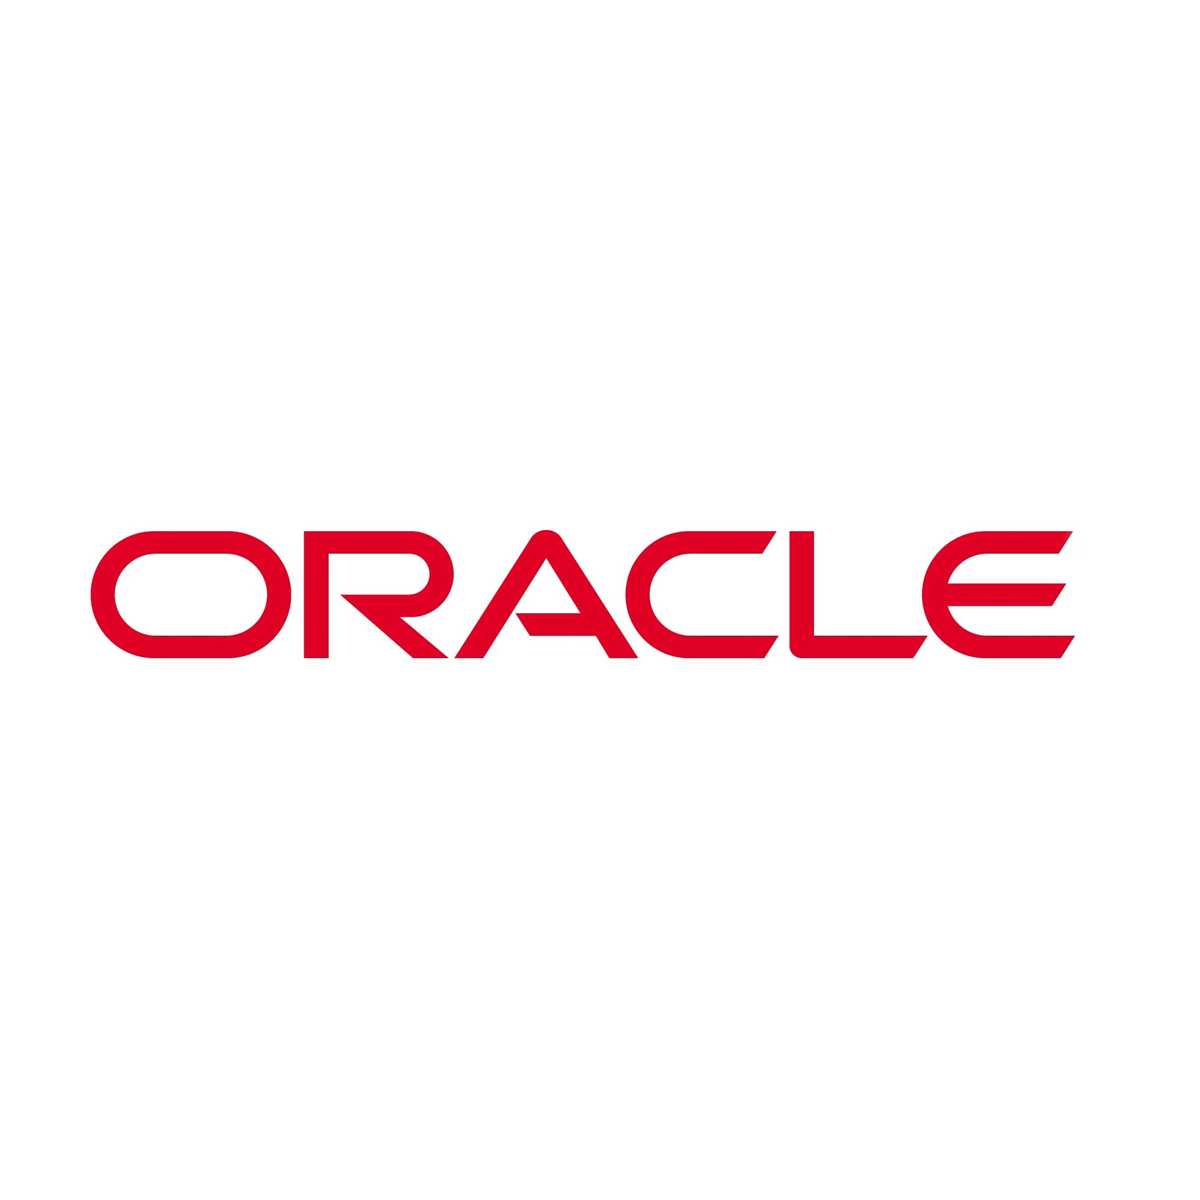 Imagen de la empresa Oracle a la que se le ofrecen los descuentos